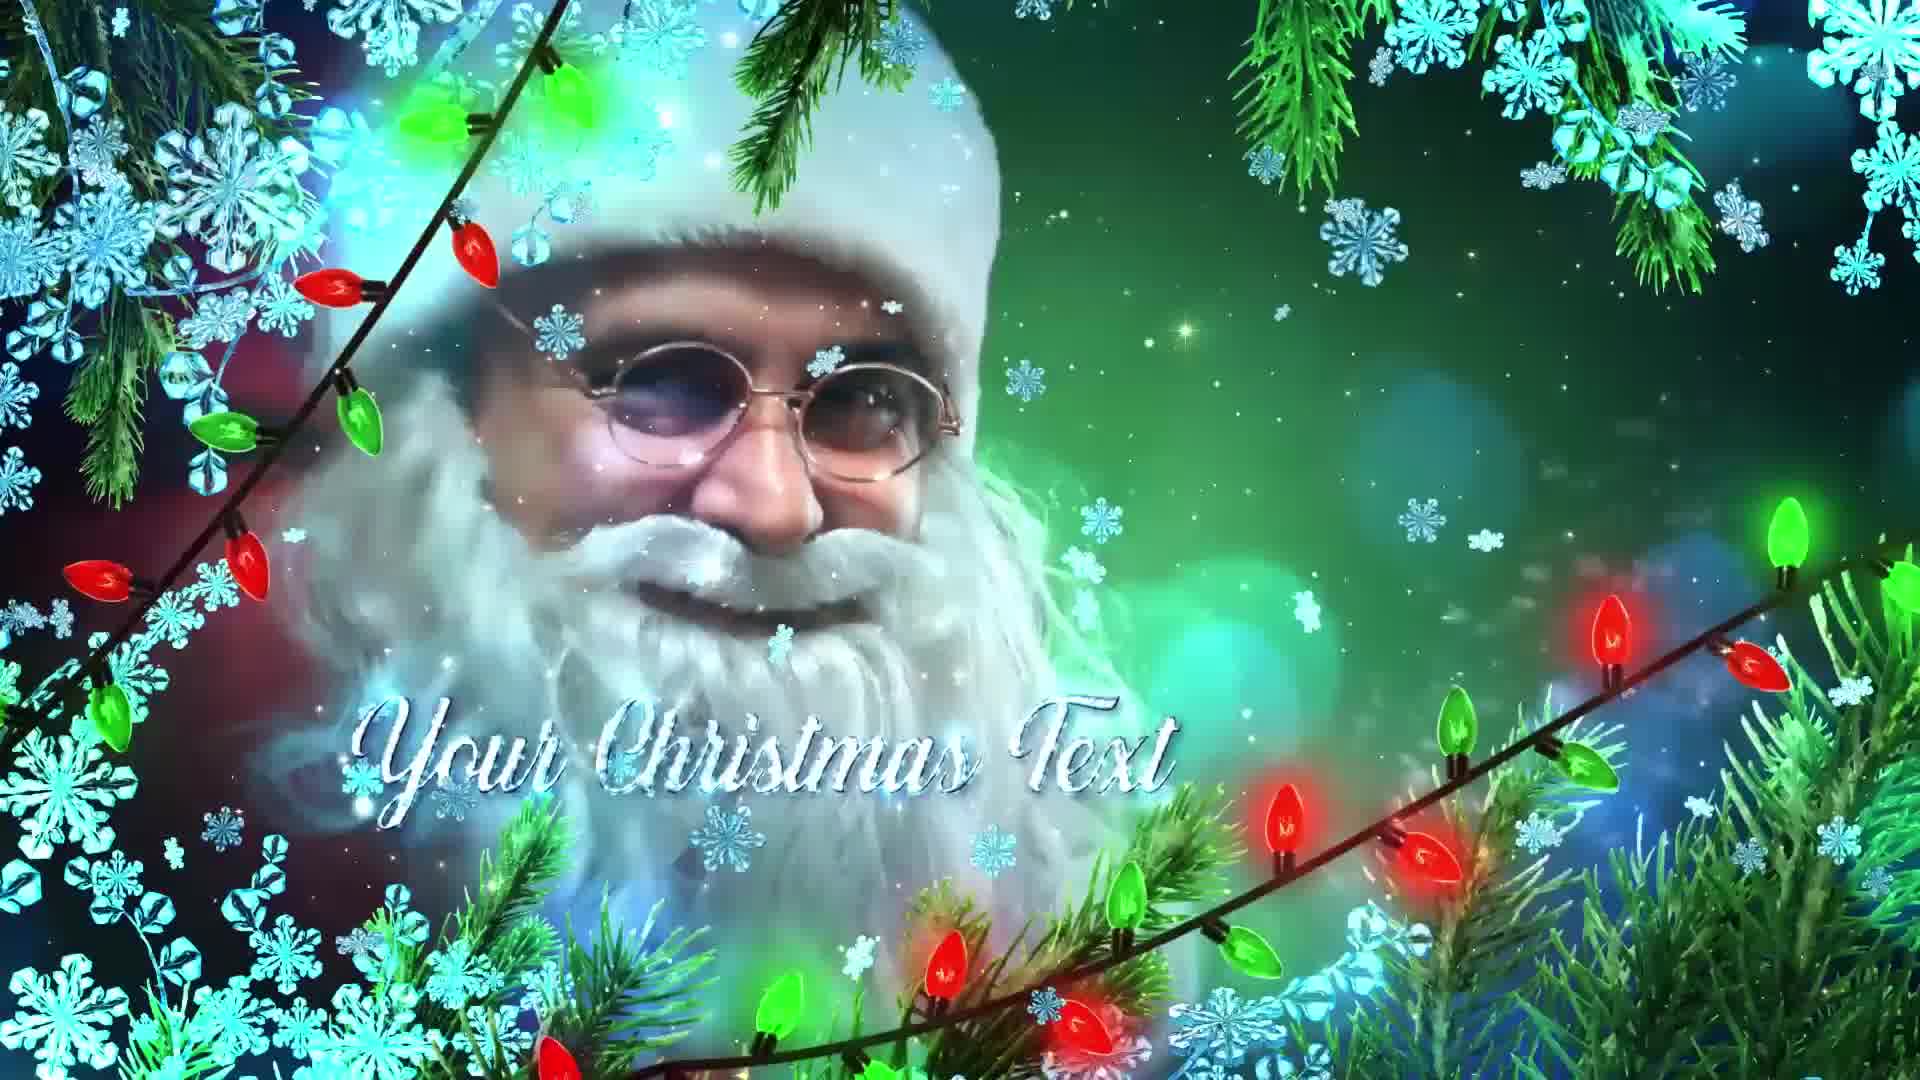 Winter Christmas Promo Premiere Pro Videohive 29575814 Premiere Pro Image 10